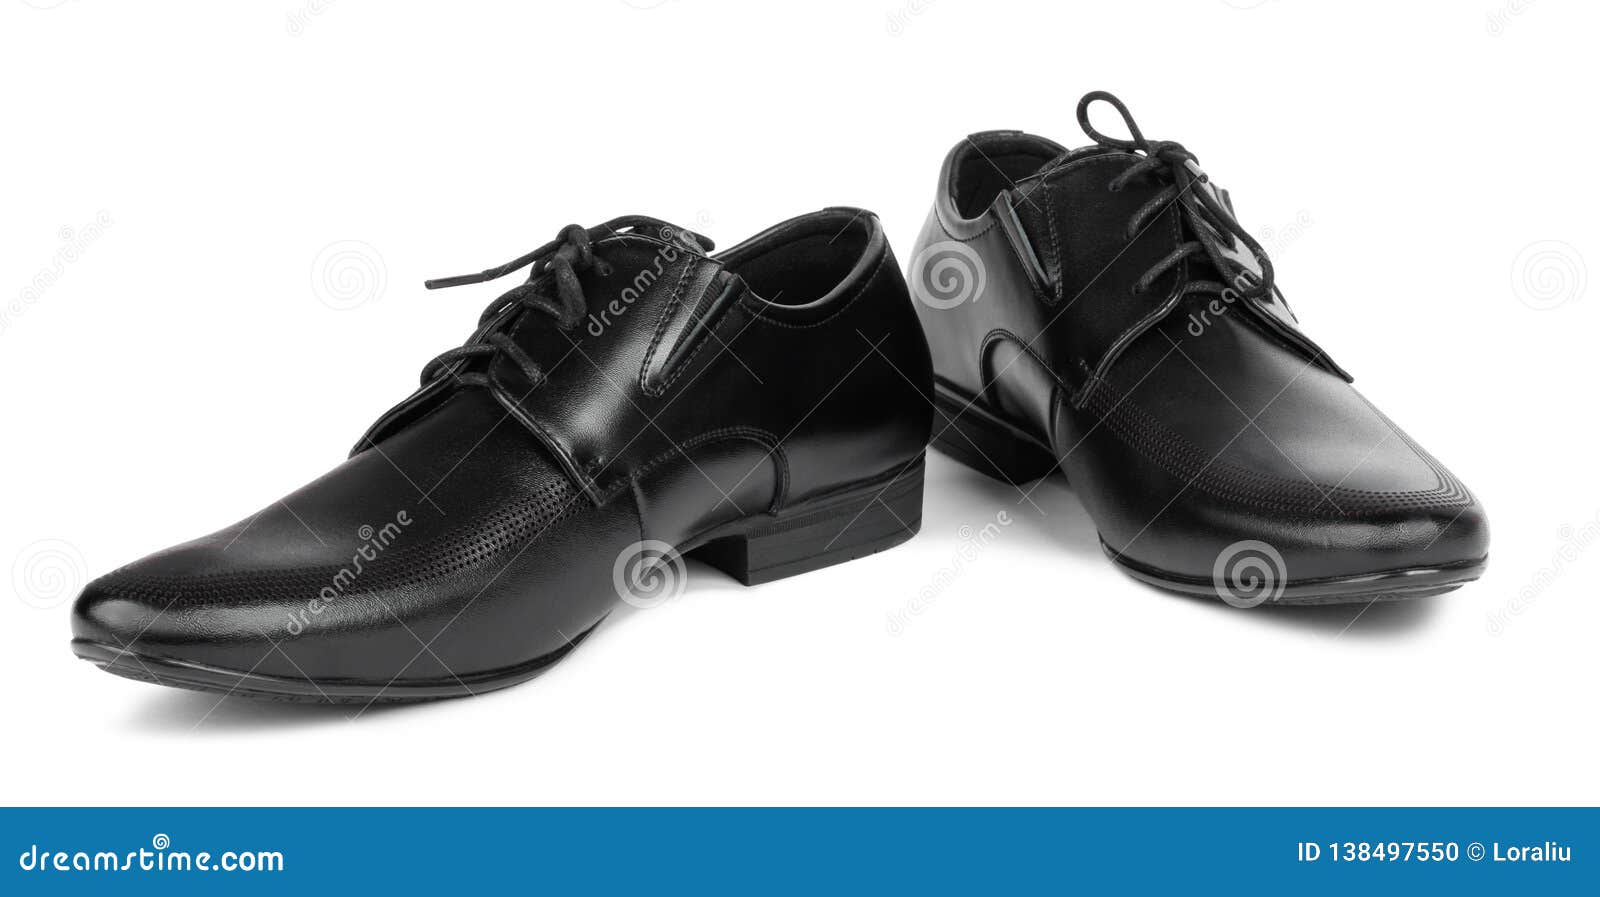 Black Elegant Men`s Shoes on Isolated Background Stock Photo - Image of ...